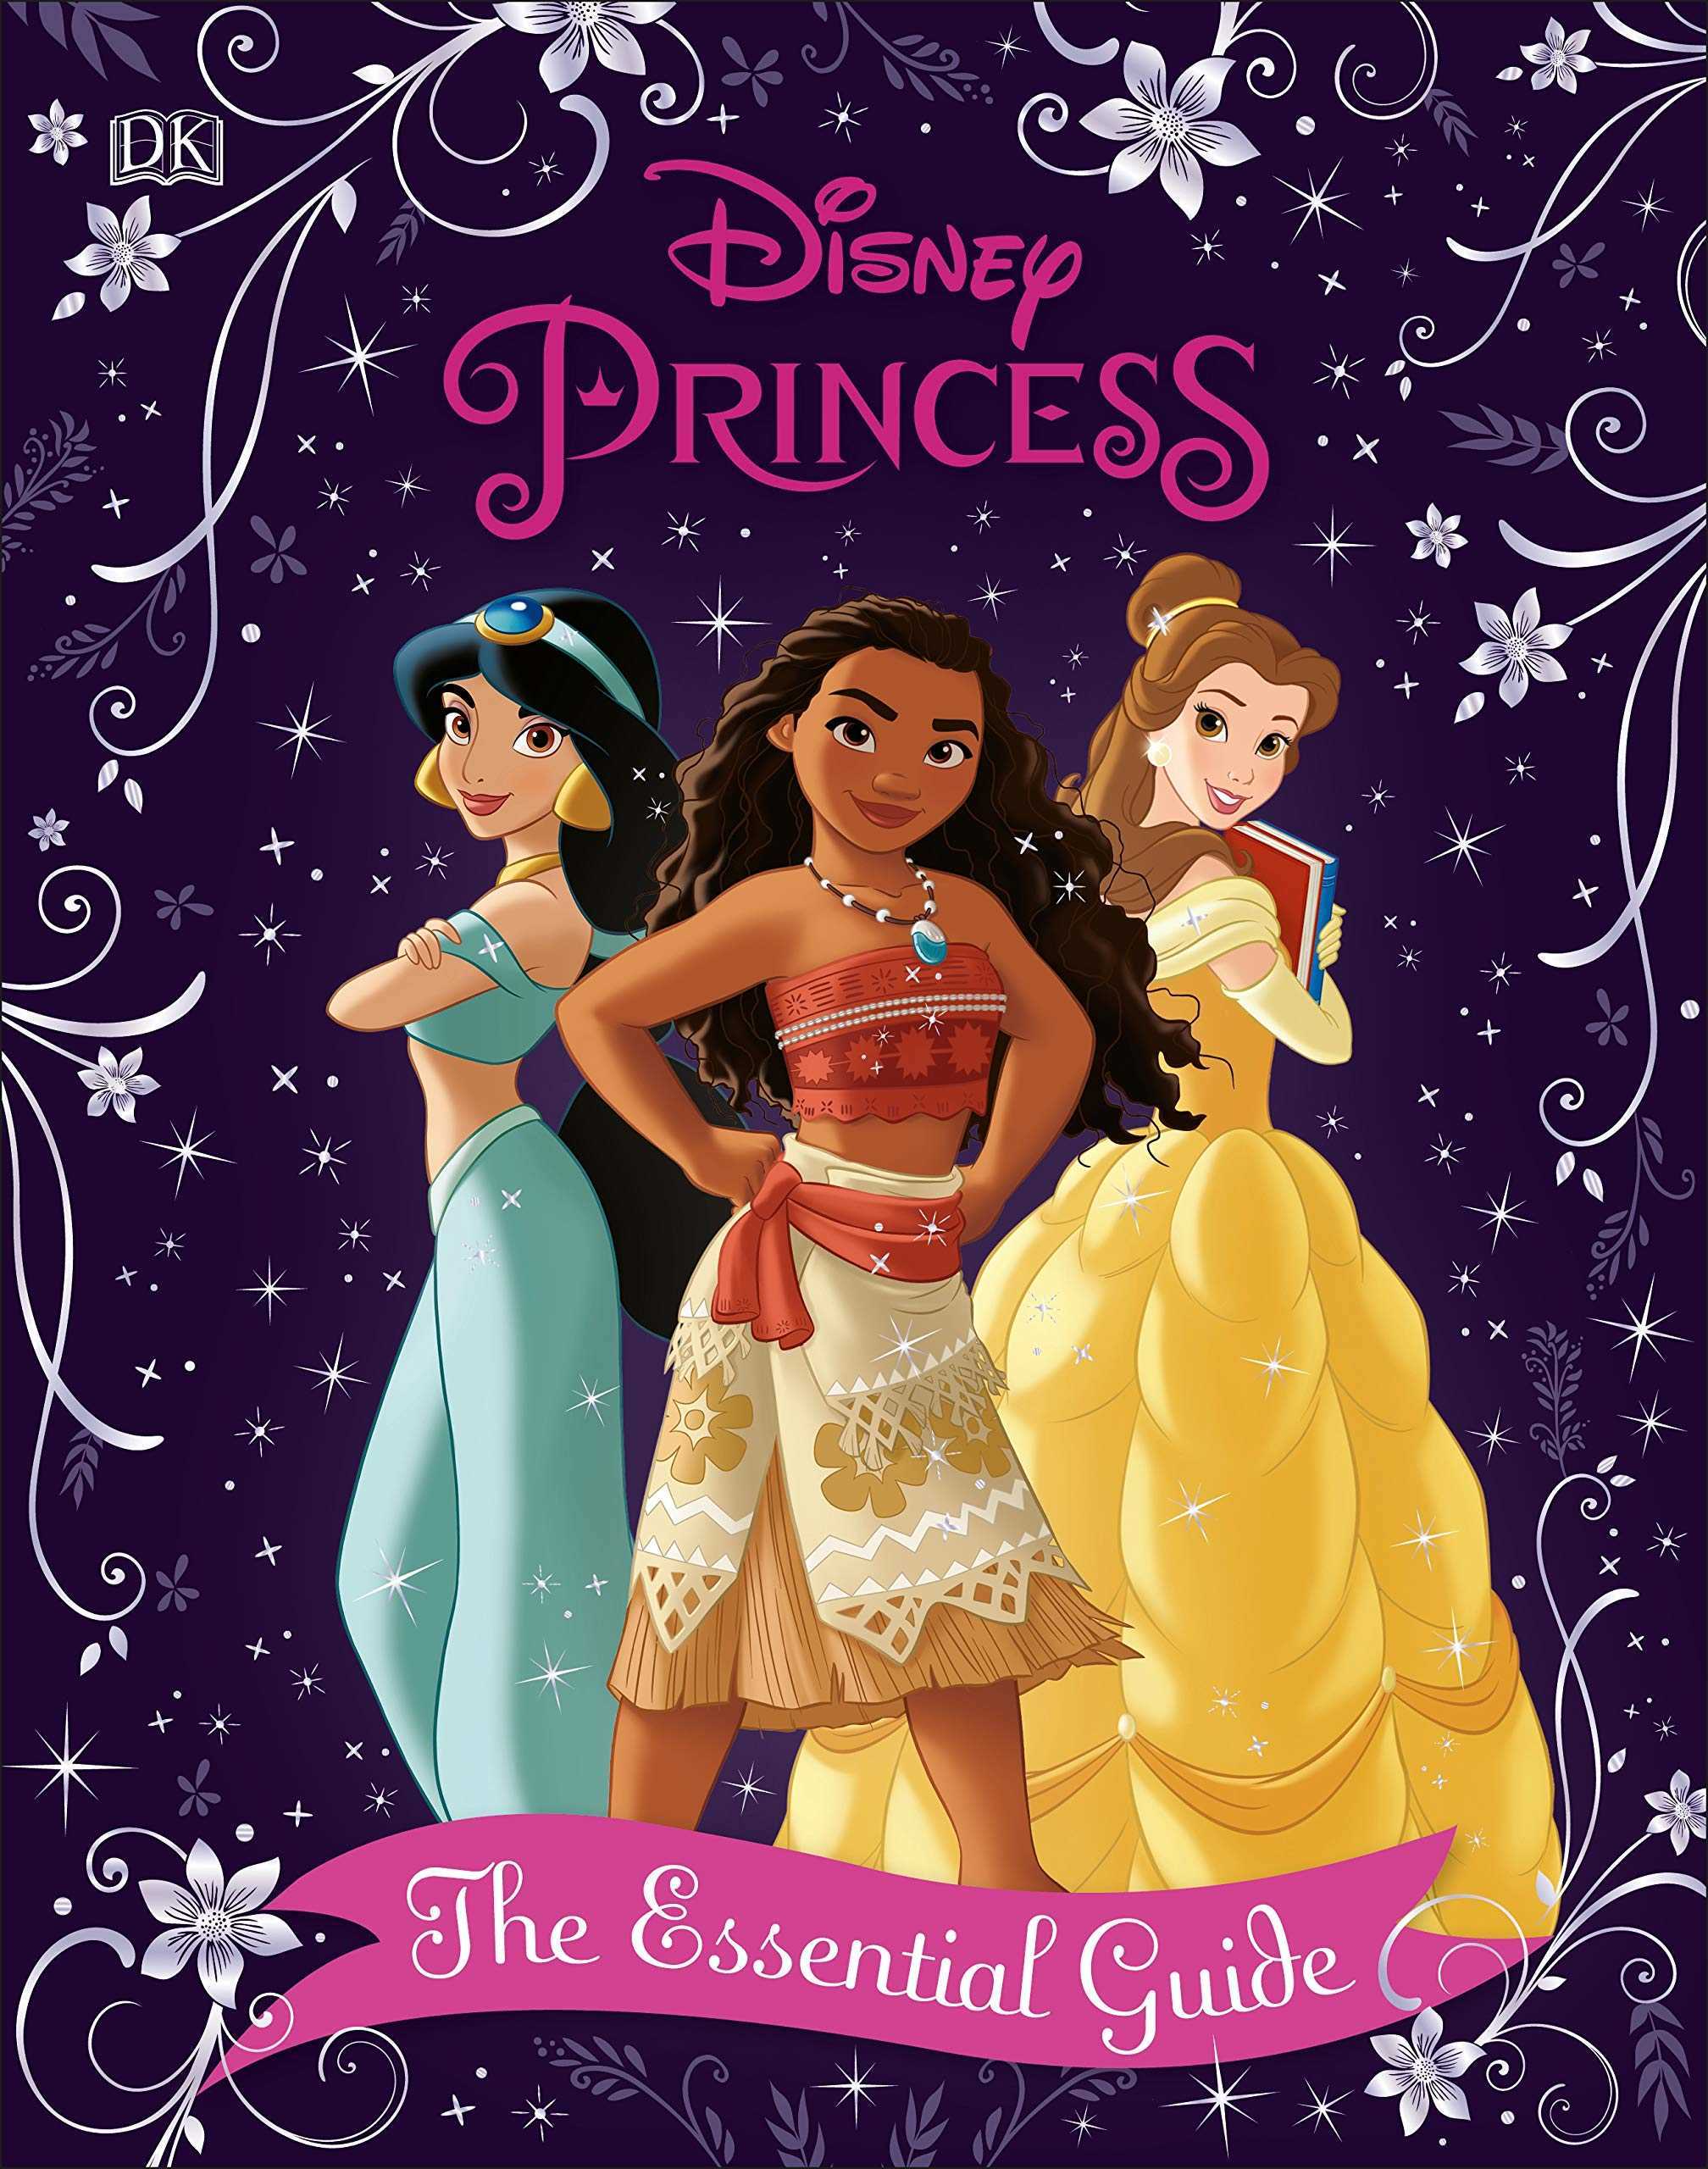 Disney Princess: The Essential Guide (2019 Edition)